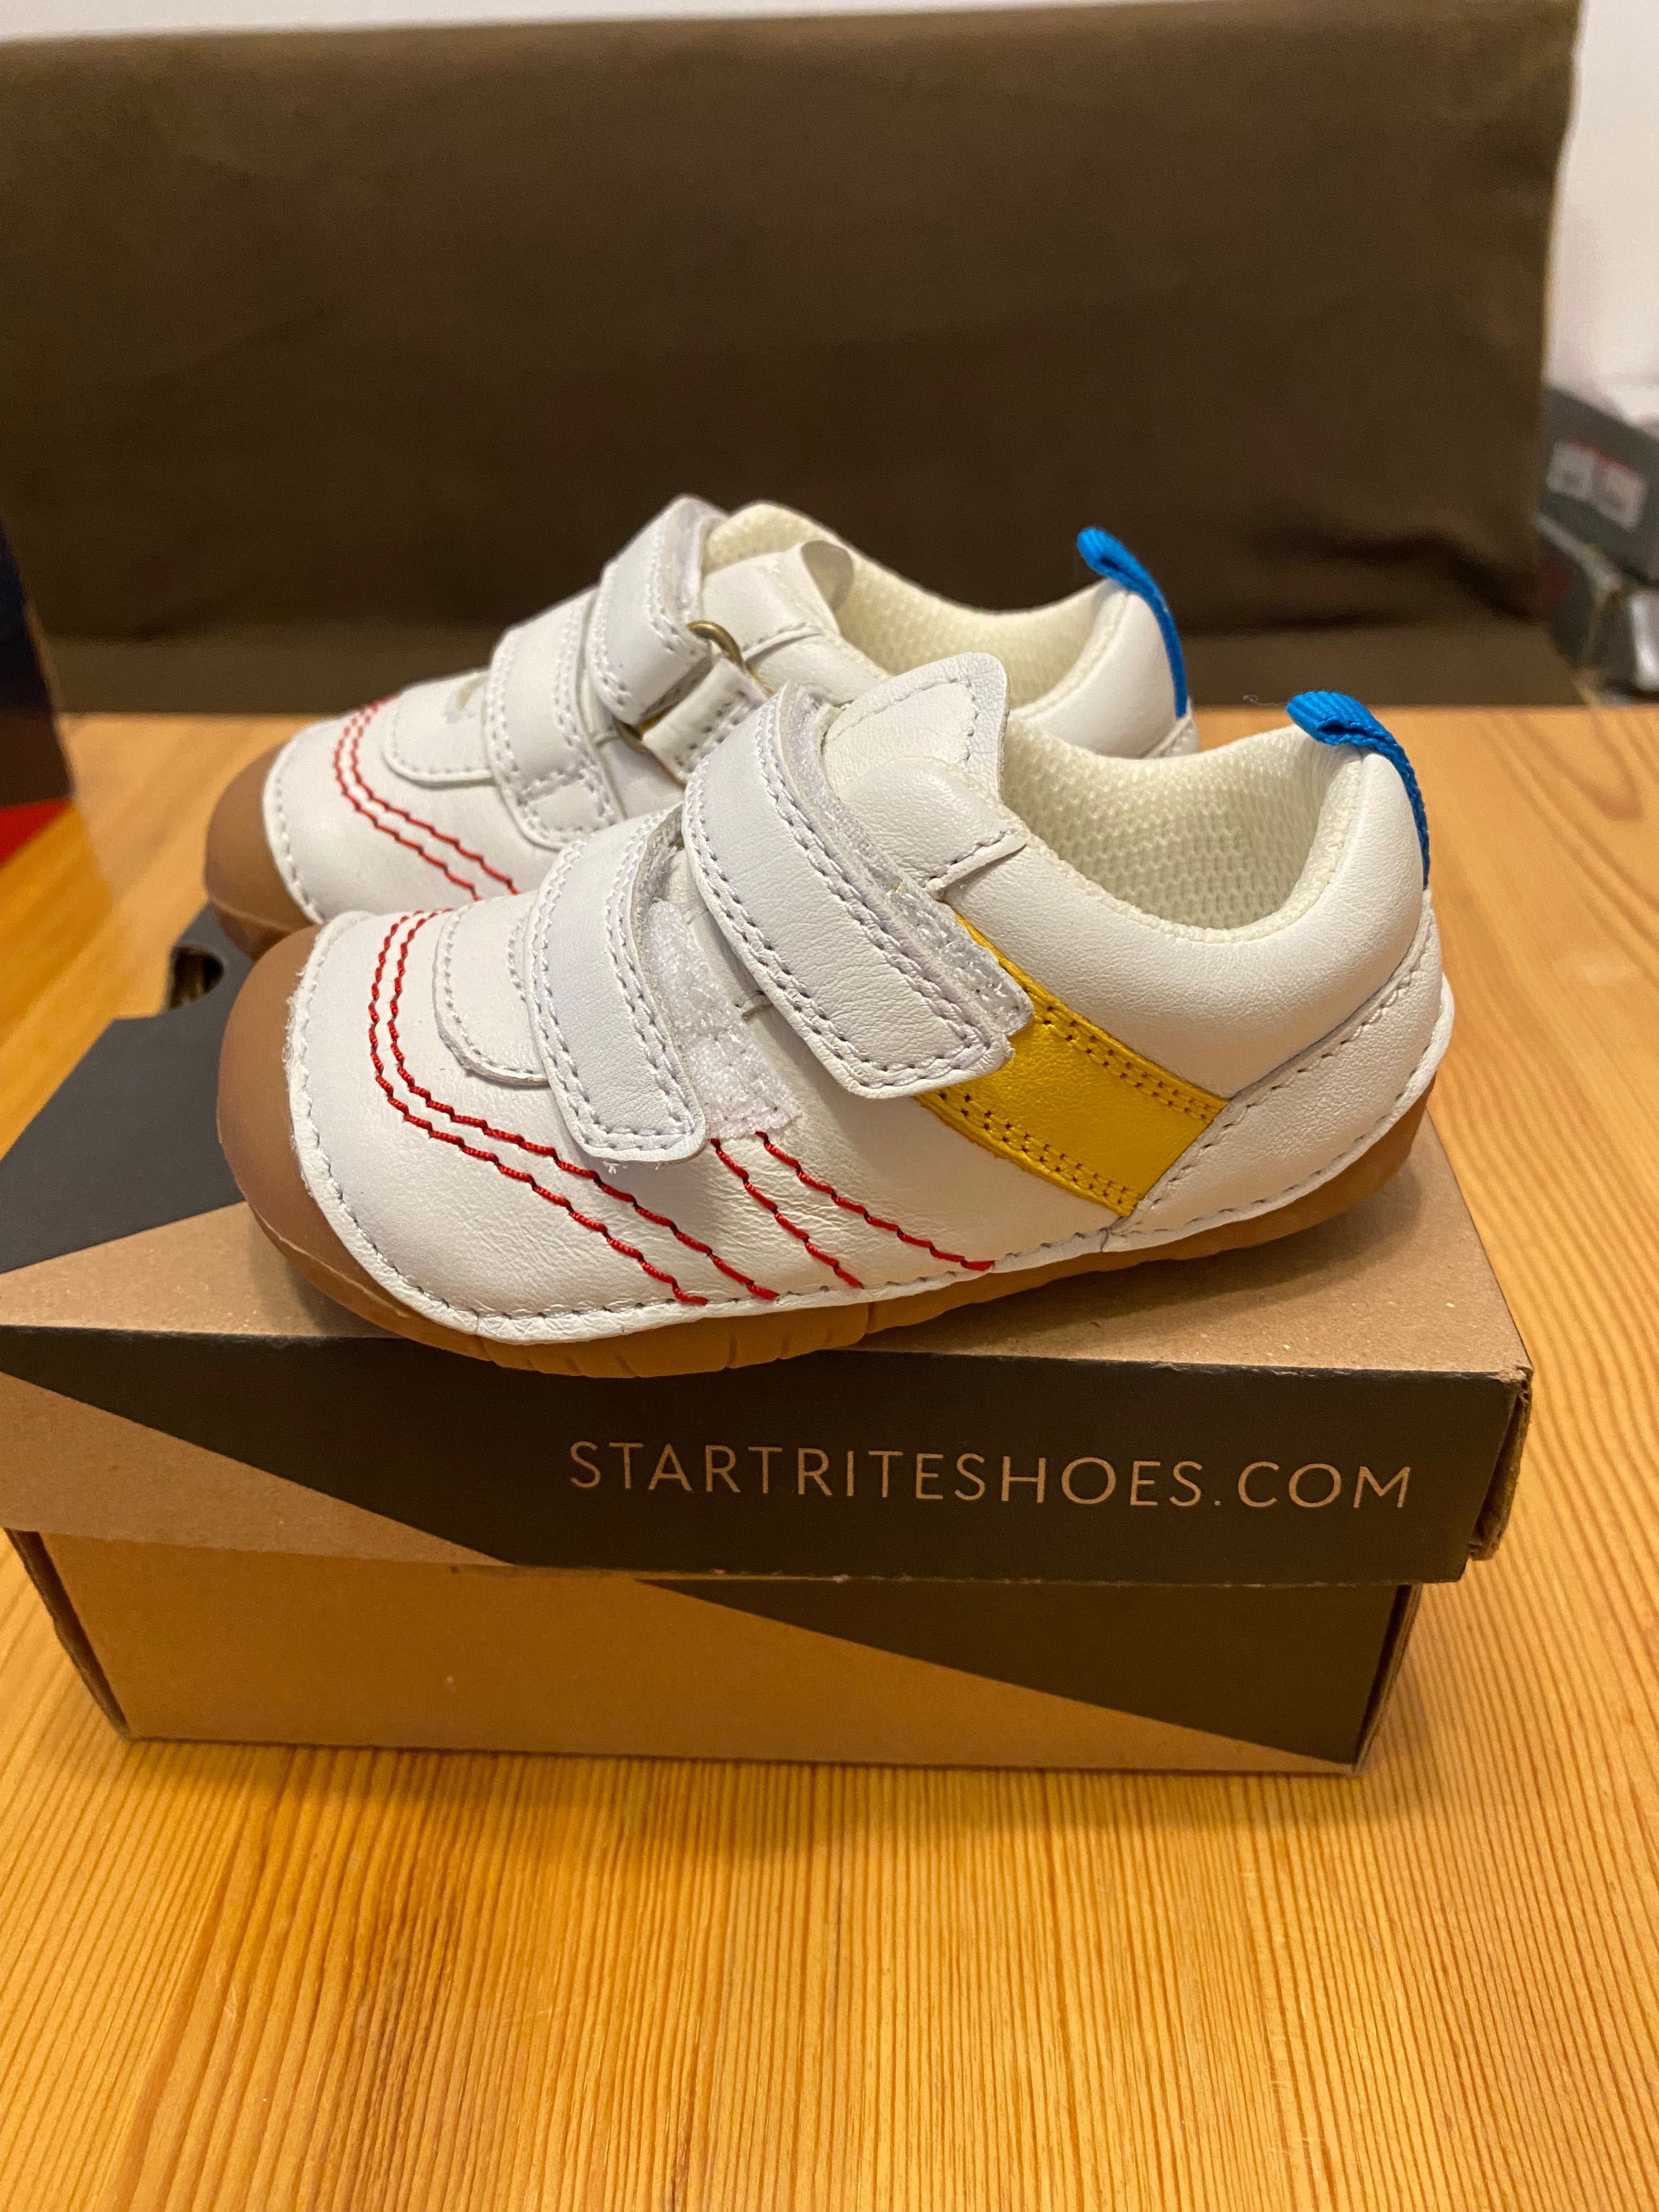 Бебешки обувки Startriteshoes